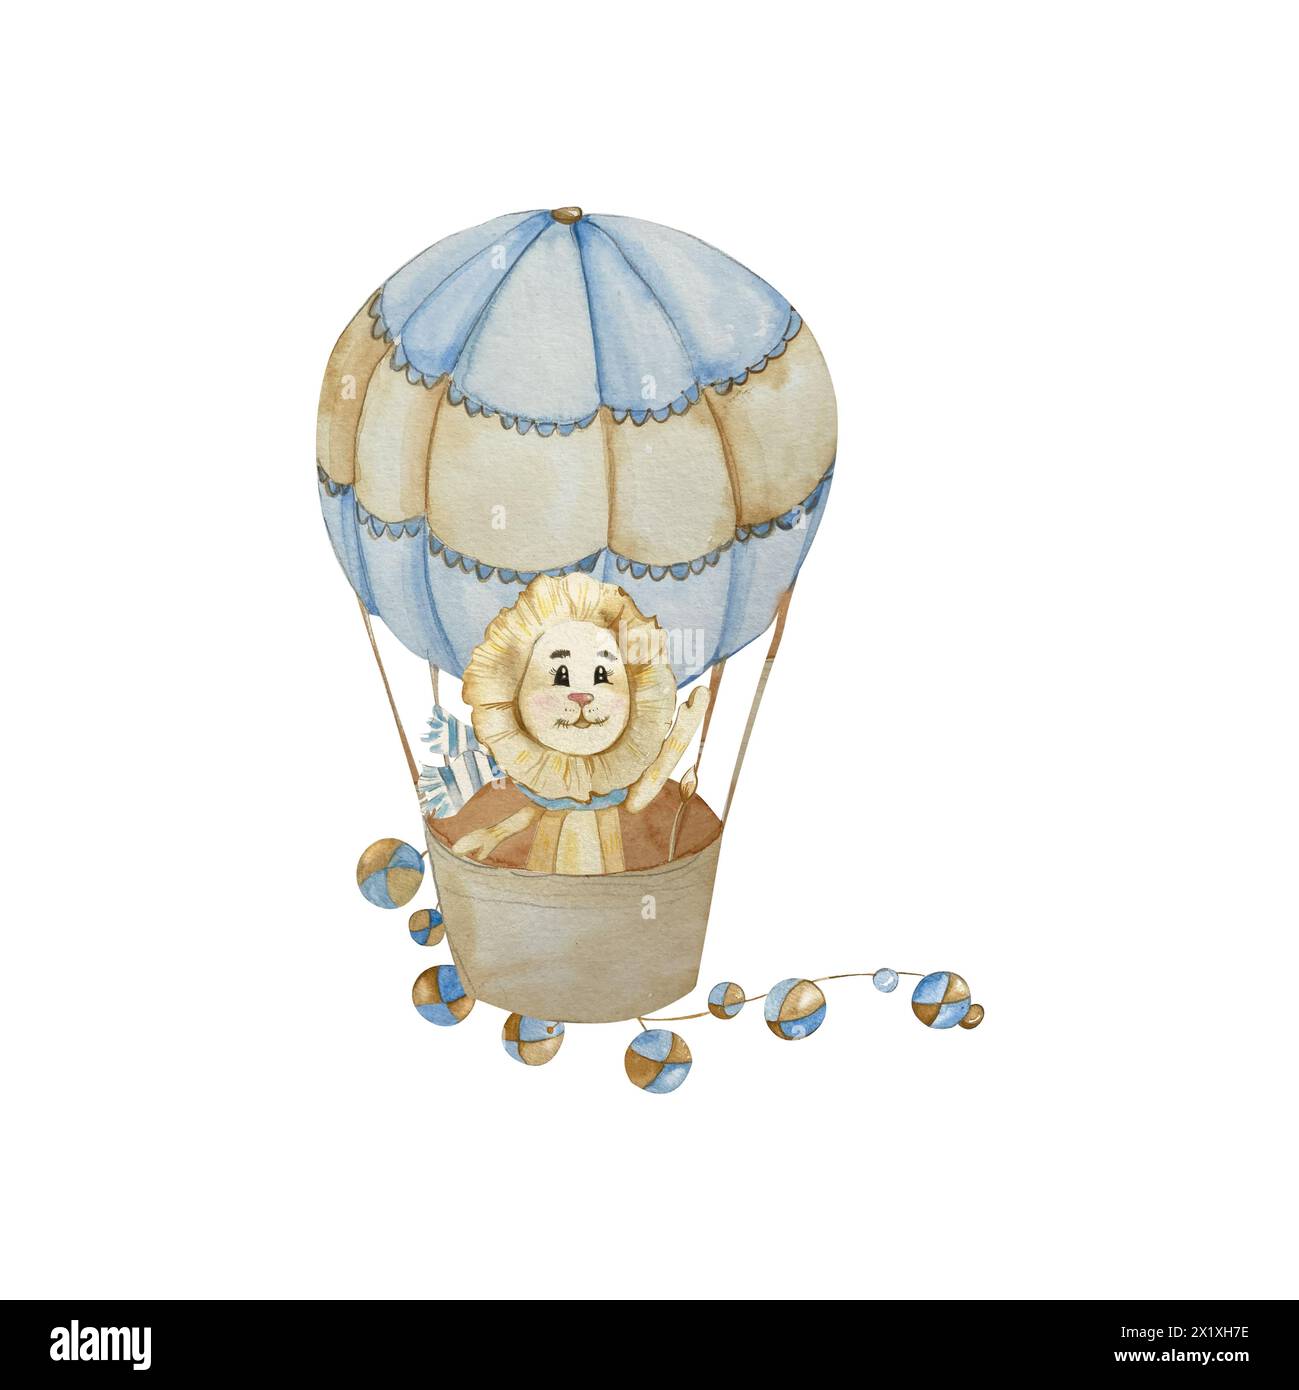 Dessin animé Lion en montgolfière avec guirlandes. Style vintage. Illustration aquarelle dans les tons Pastel Bleu et Beige. Pour Design Children's Room, Bab Banque D'Images